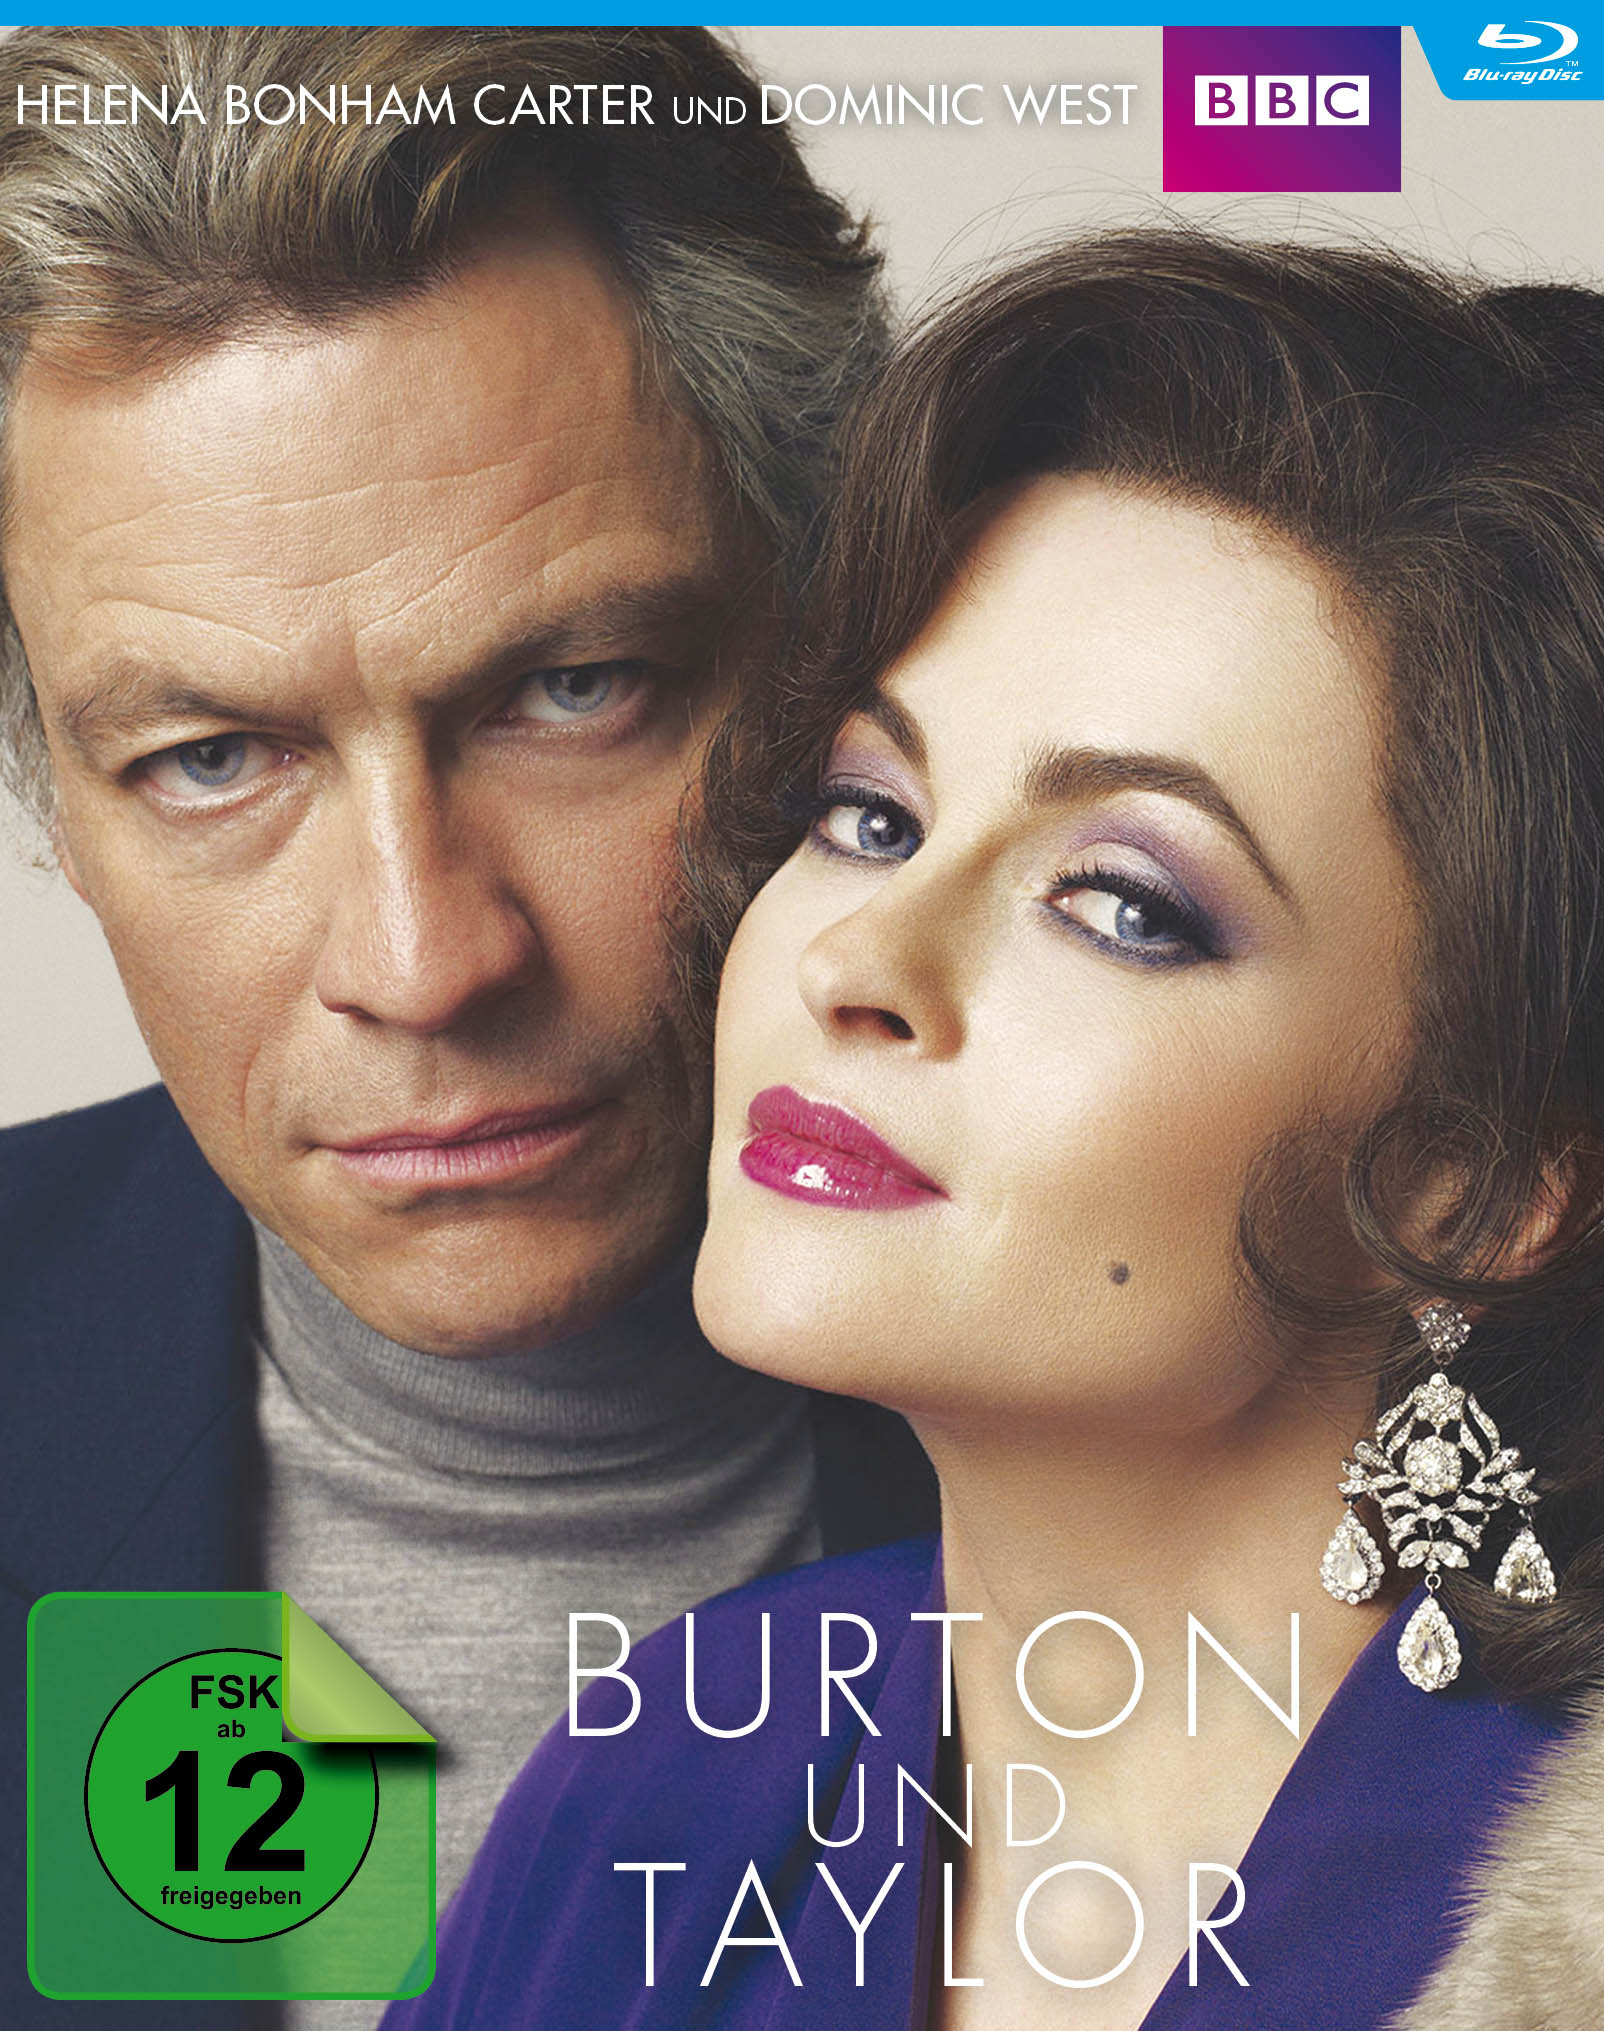 Taylor (BBC) Blu-ray und Burton